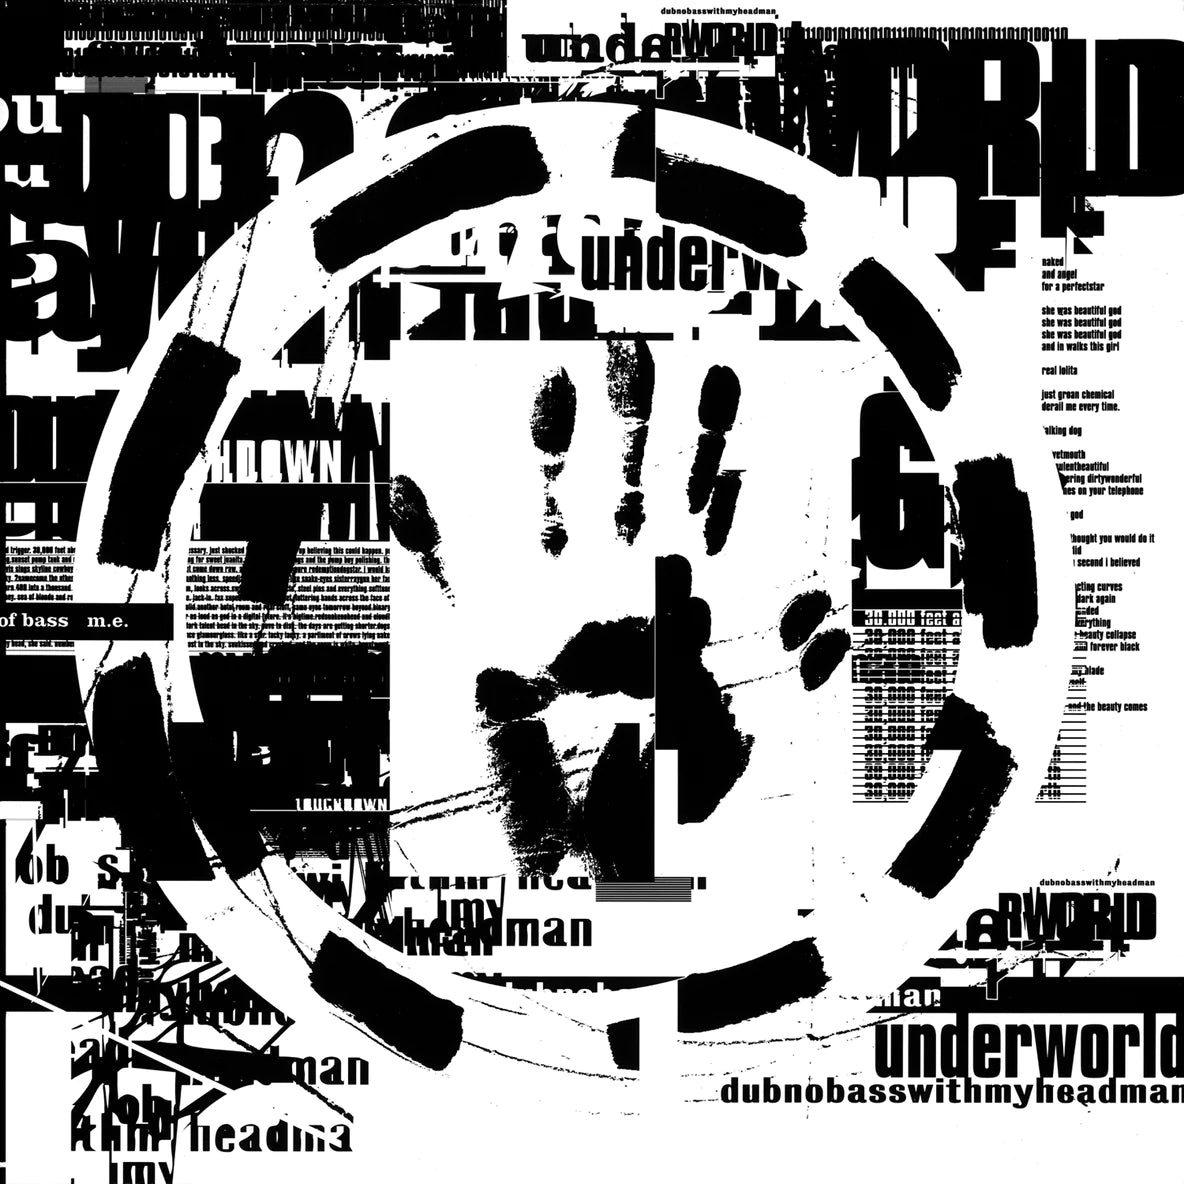 Underworld - Dubnobass... Double LP (1994)